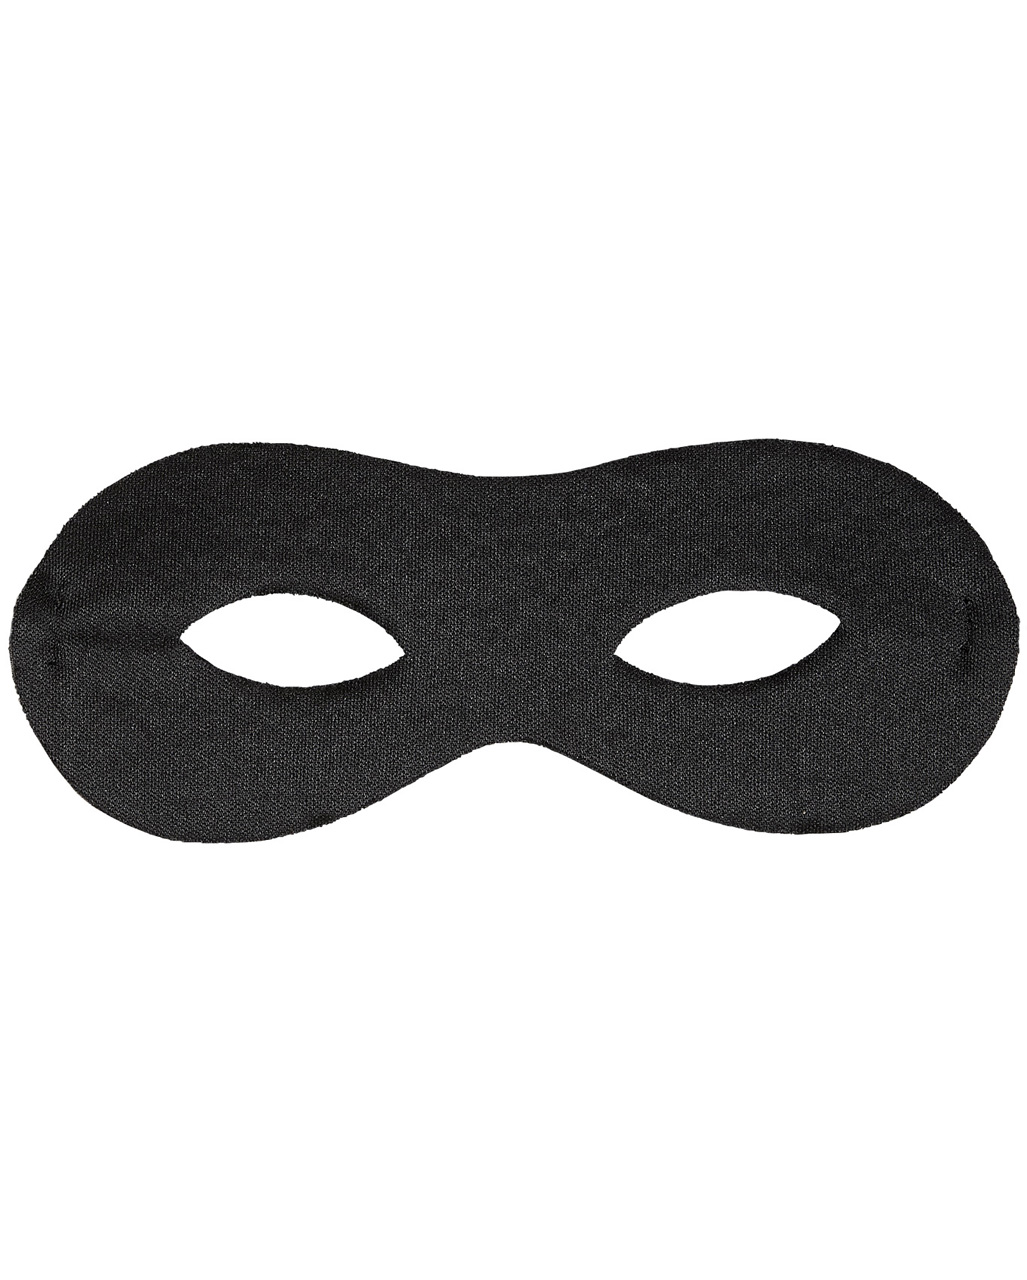 Bandit Augenmaske als Kostümzubehör von Horror-Shop.com